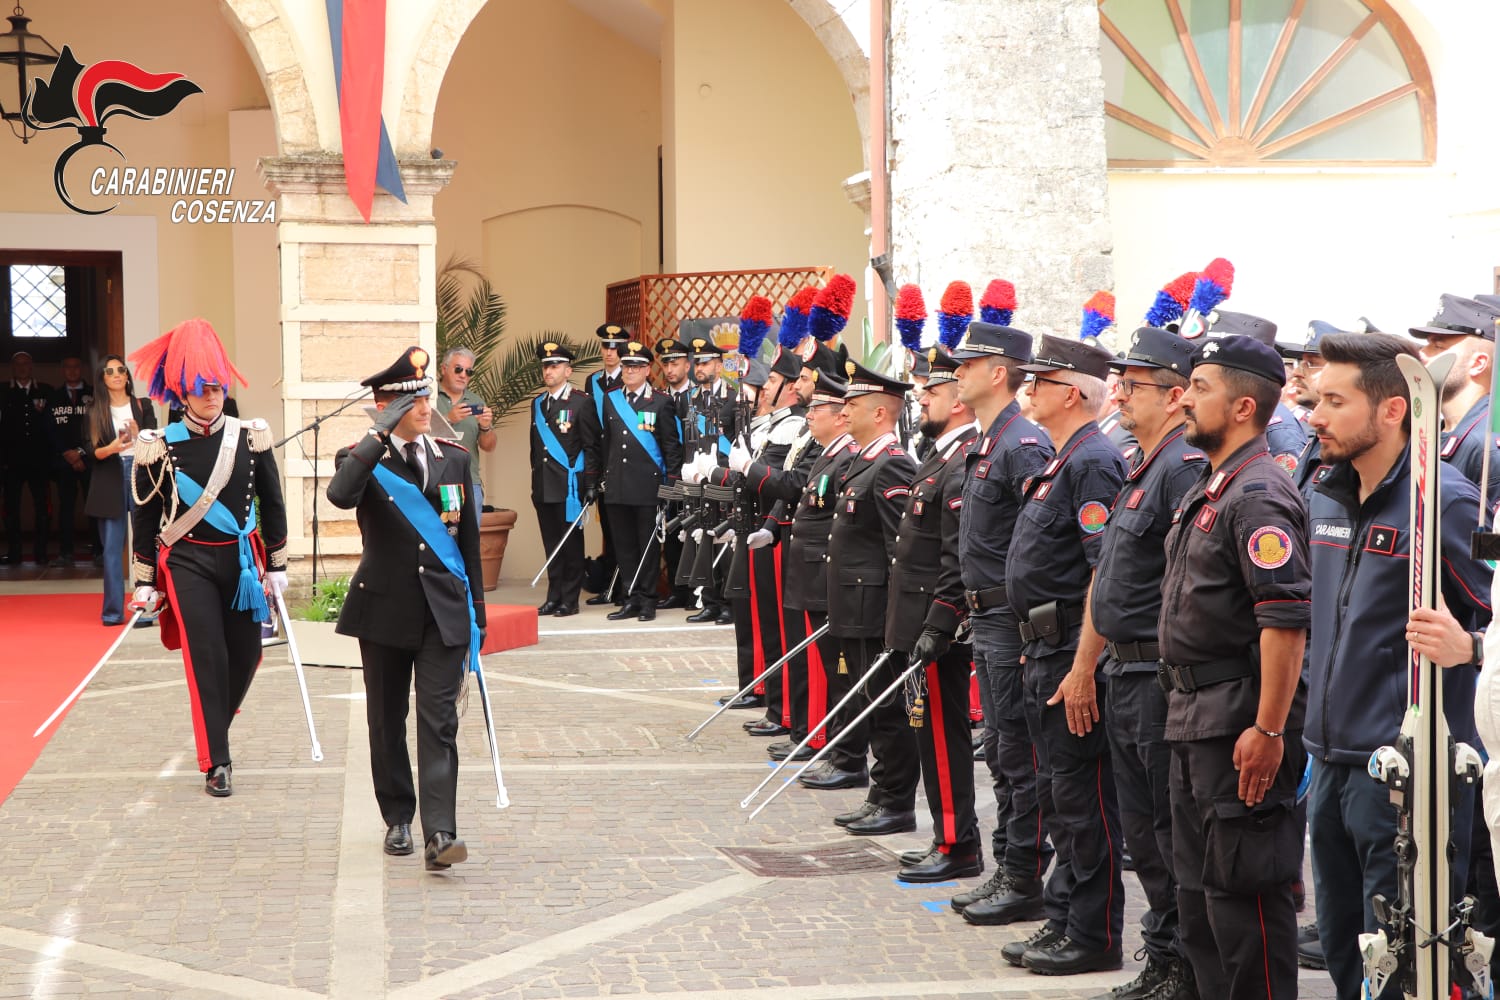 Cerimonia a Cosenza per i 209 anni dell’Arma dei Carabinieri